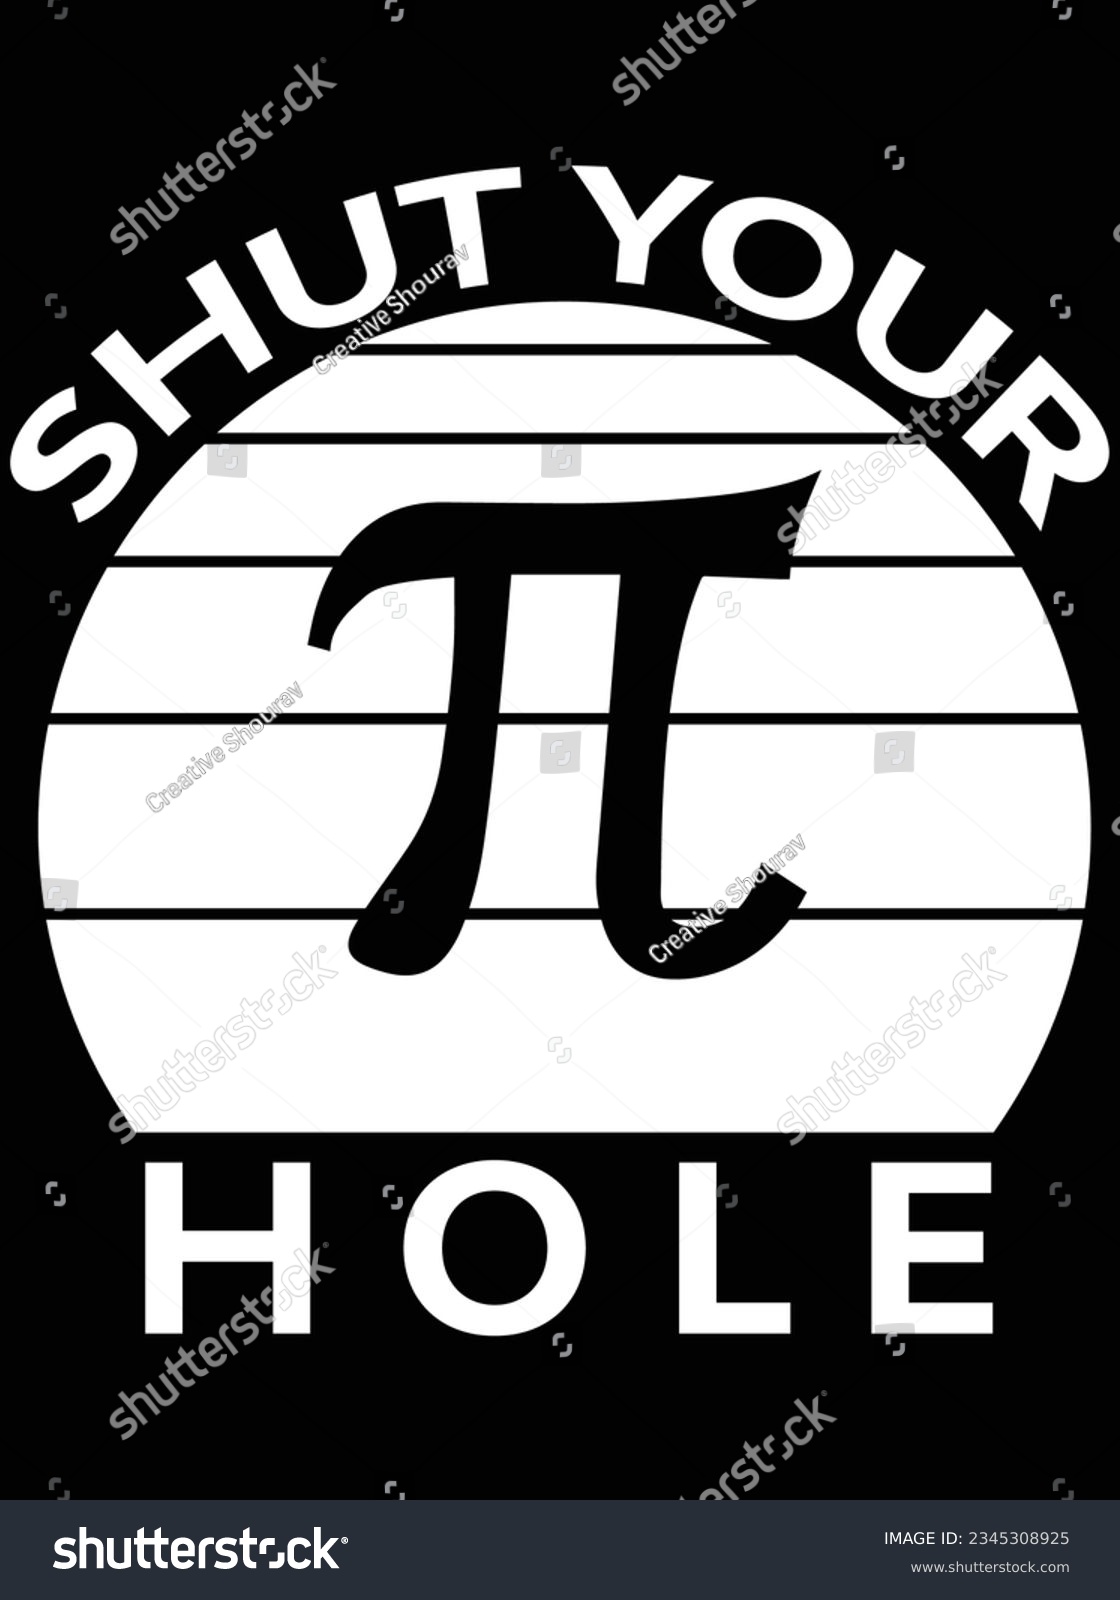 SVG of Shut your hole vector art design, eps file. design file for t-shirt. SVG, EPS cuttable design file svg